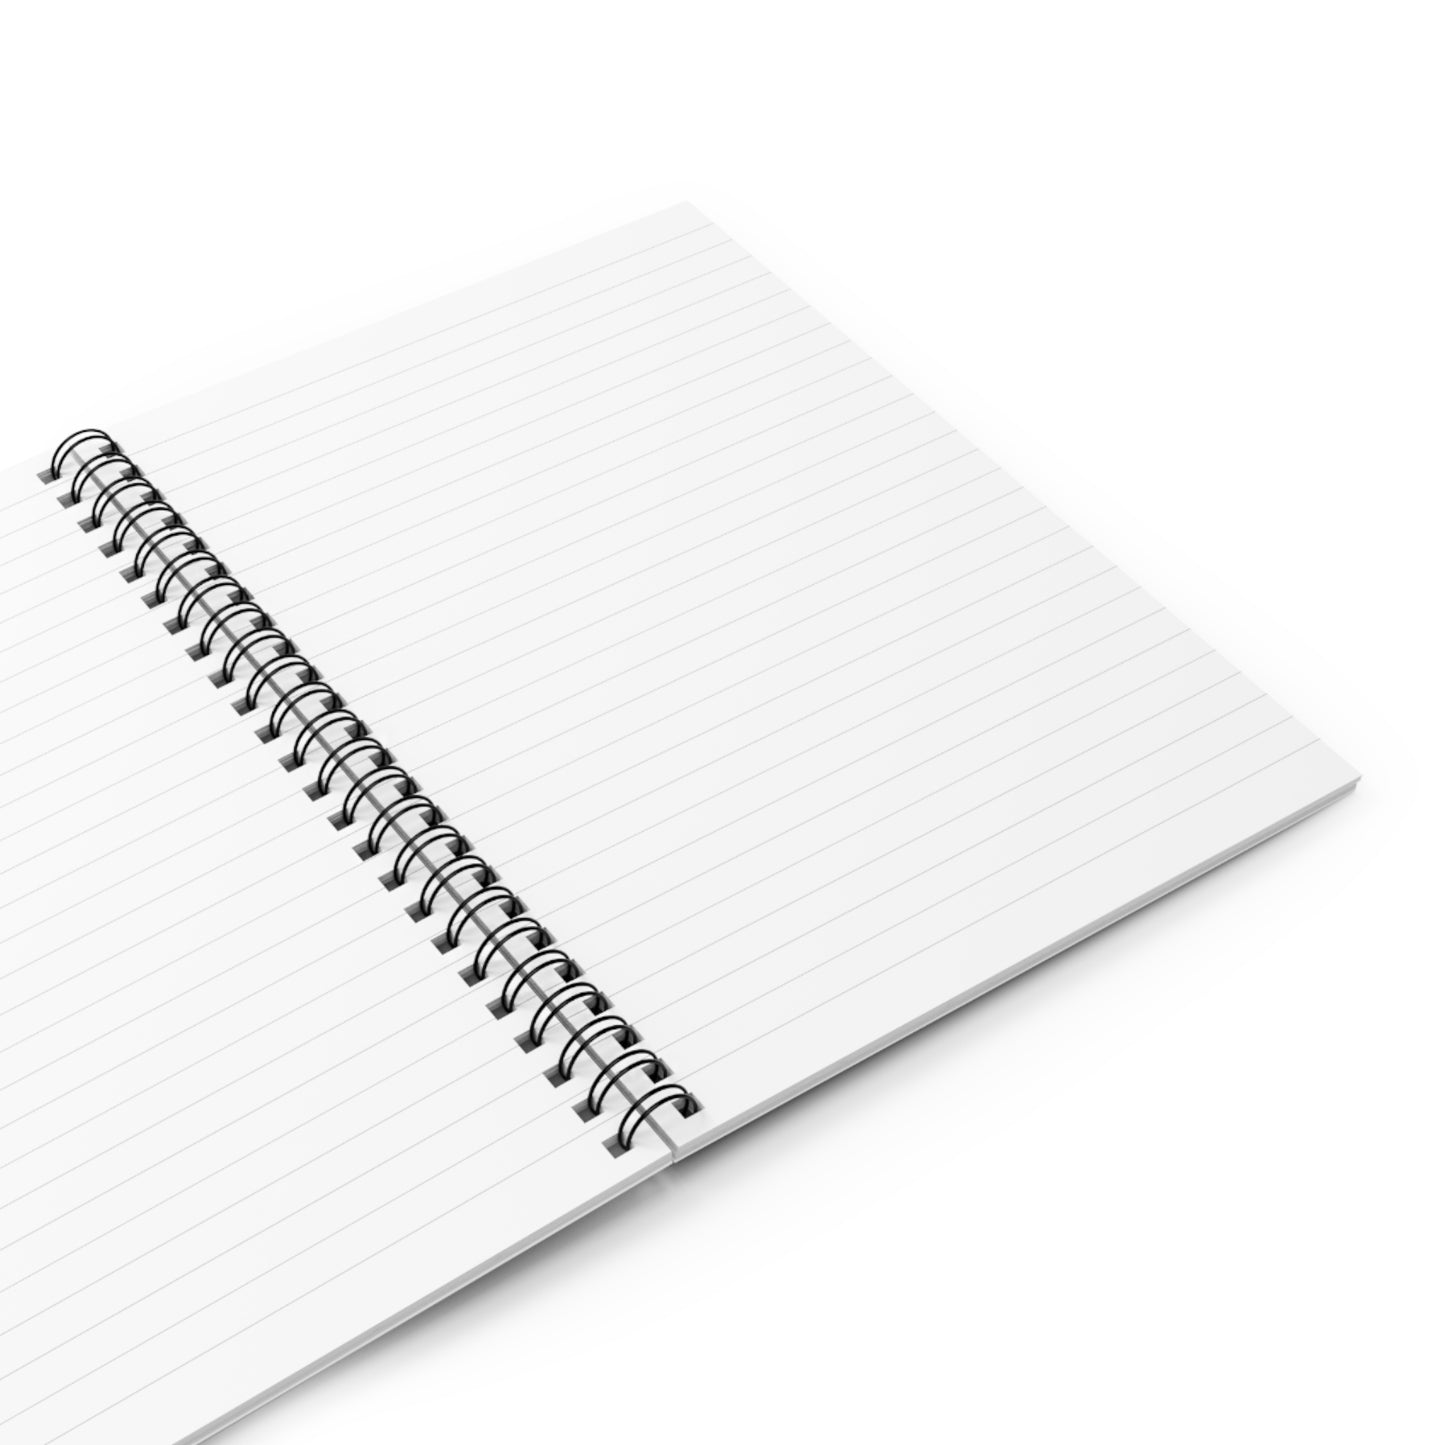 SynderMaster Notebook Journal